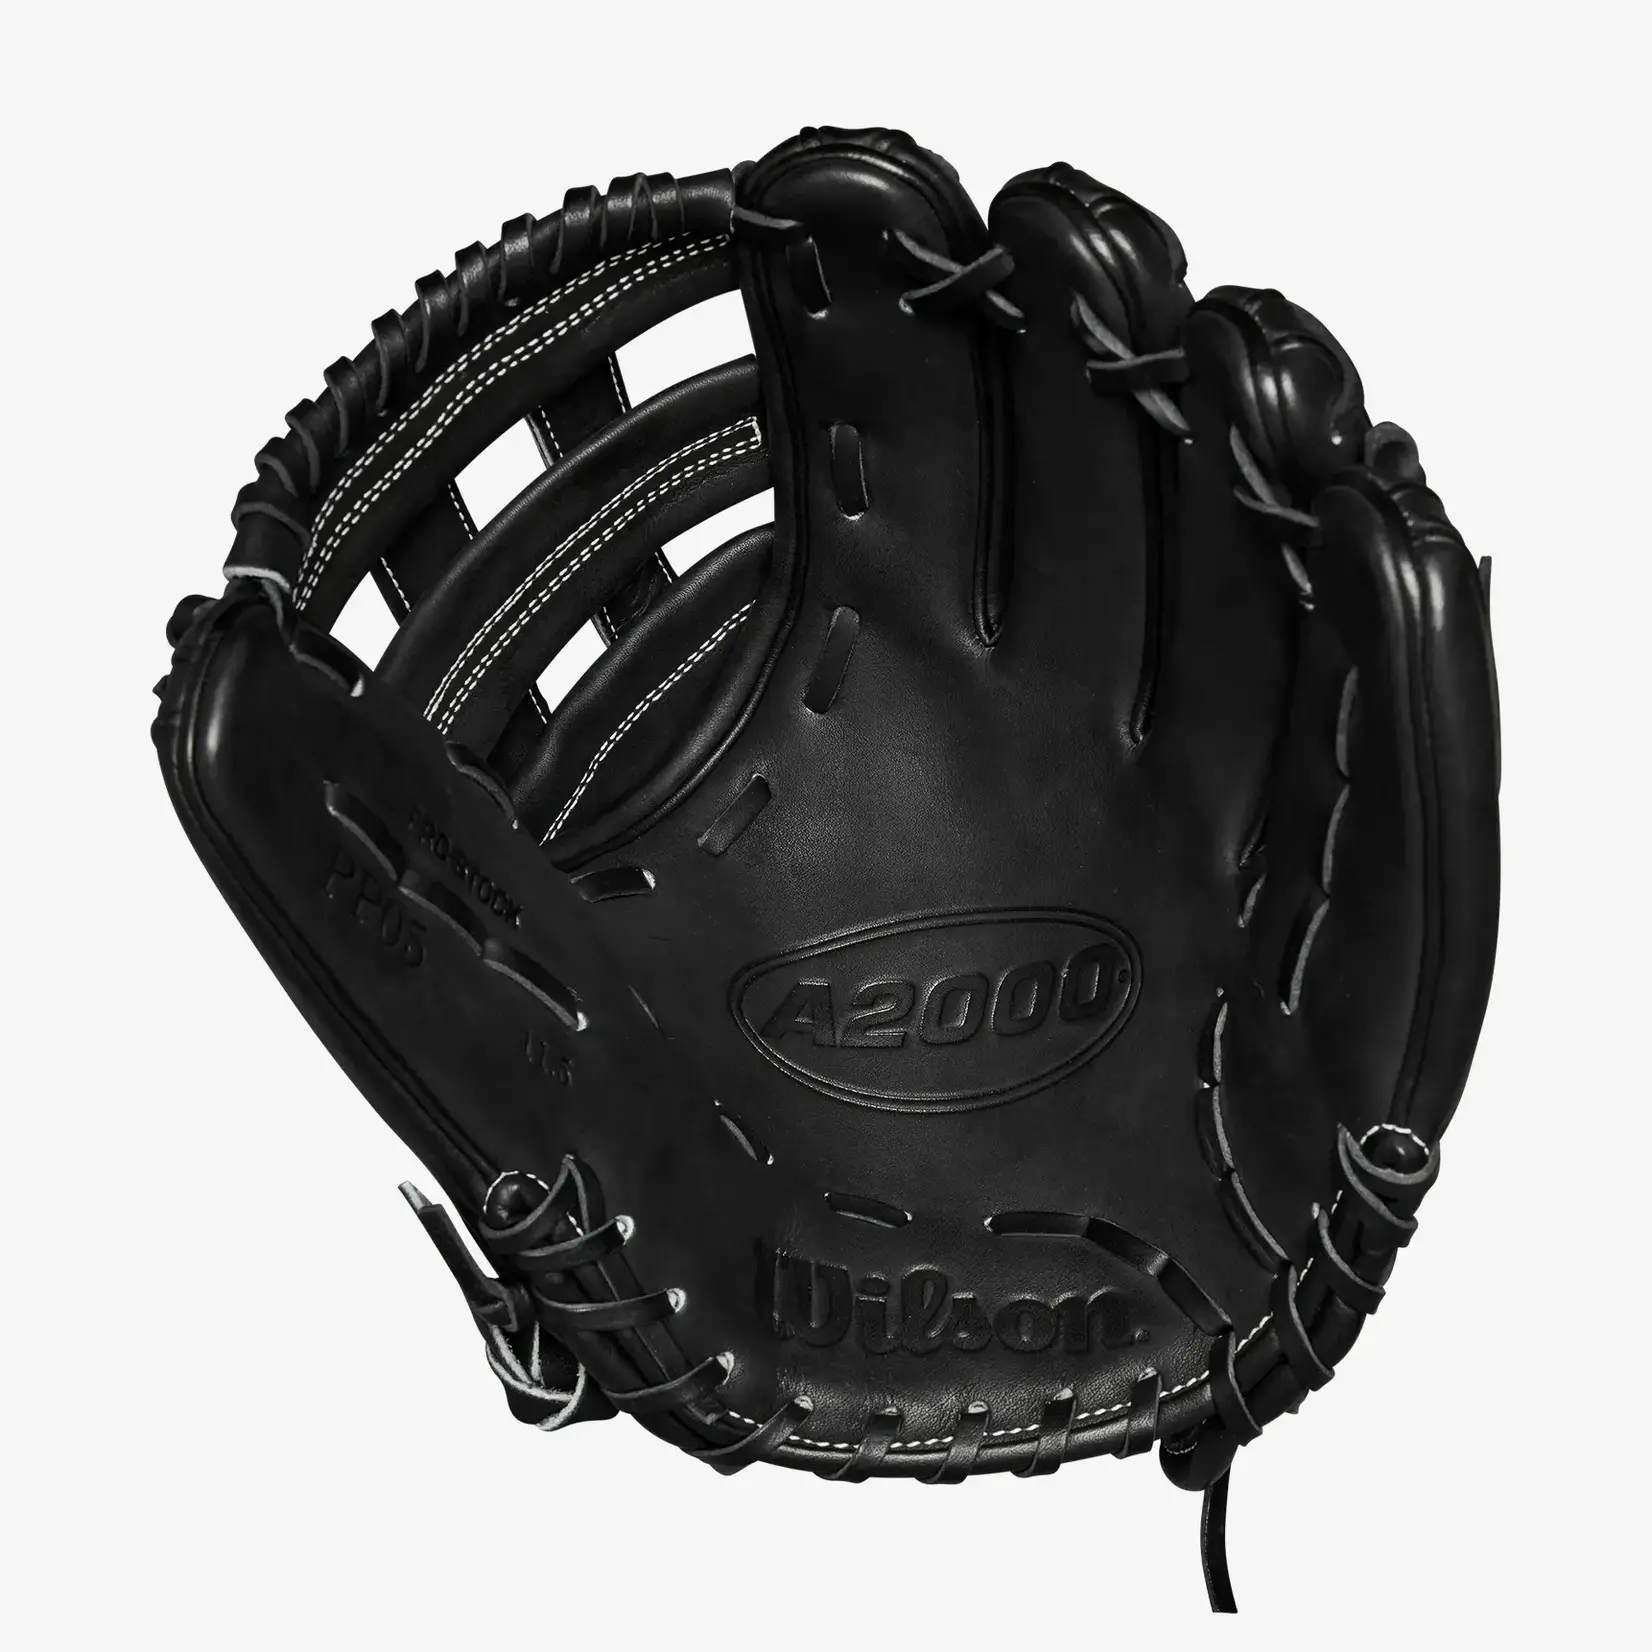 Wilson Wilson Baseball Glove, A2000 PP05, Reg, 11.5", Infield Pattern, Blk